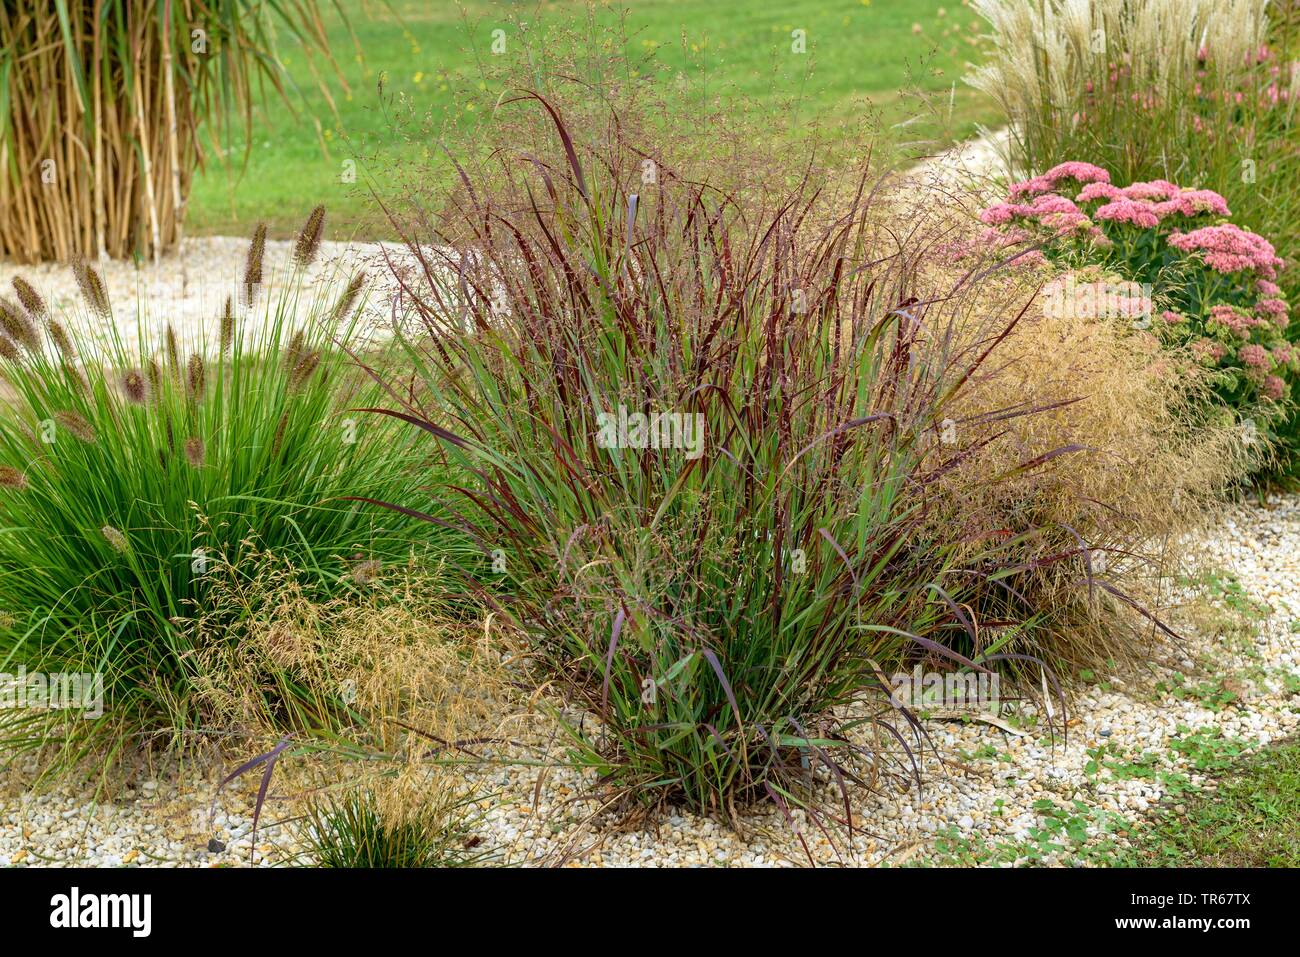 Old switch panic grass (Panicum virgatum 'Kuestenmoor', Panicum virgatum Kuestenmoor), blooming, cultivar Kuestenmoor Stock Photo